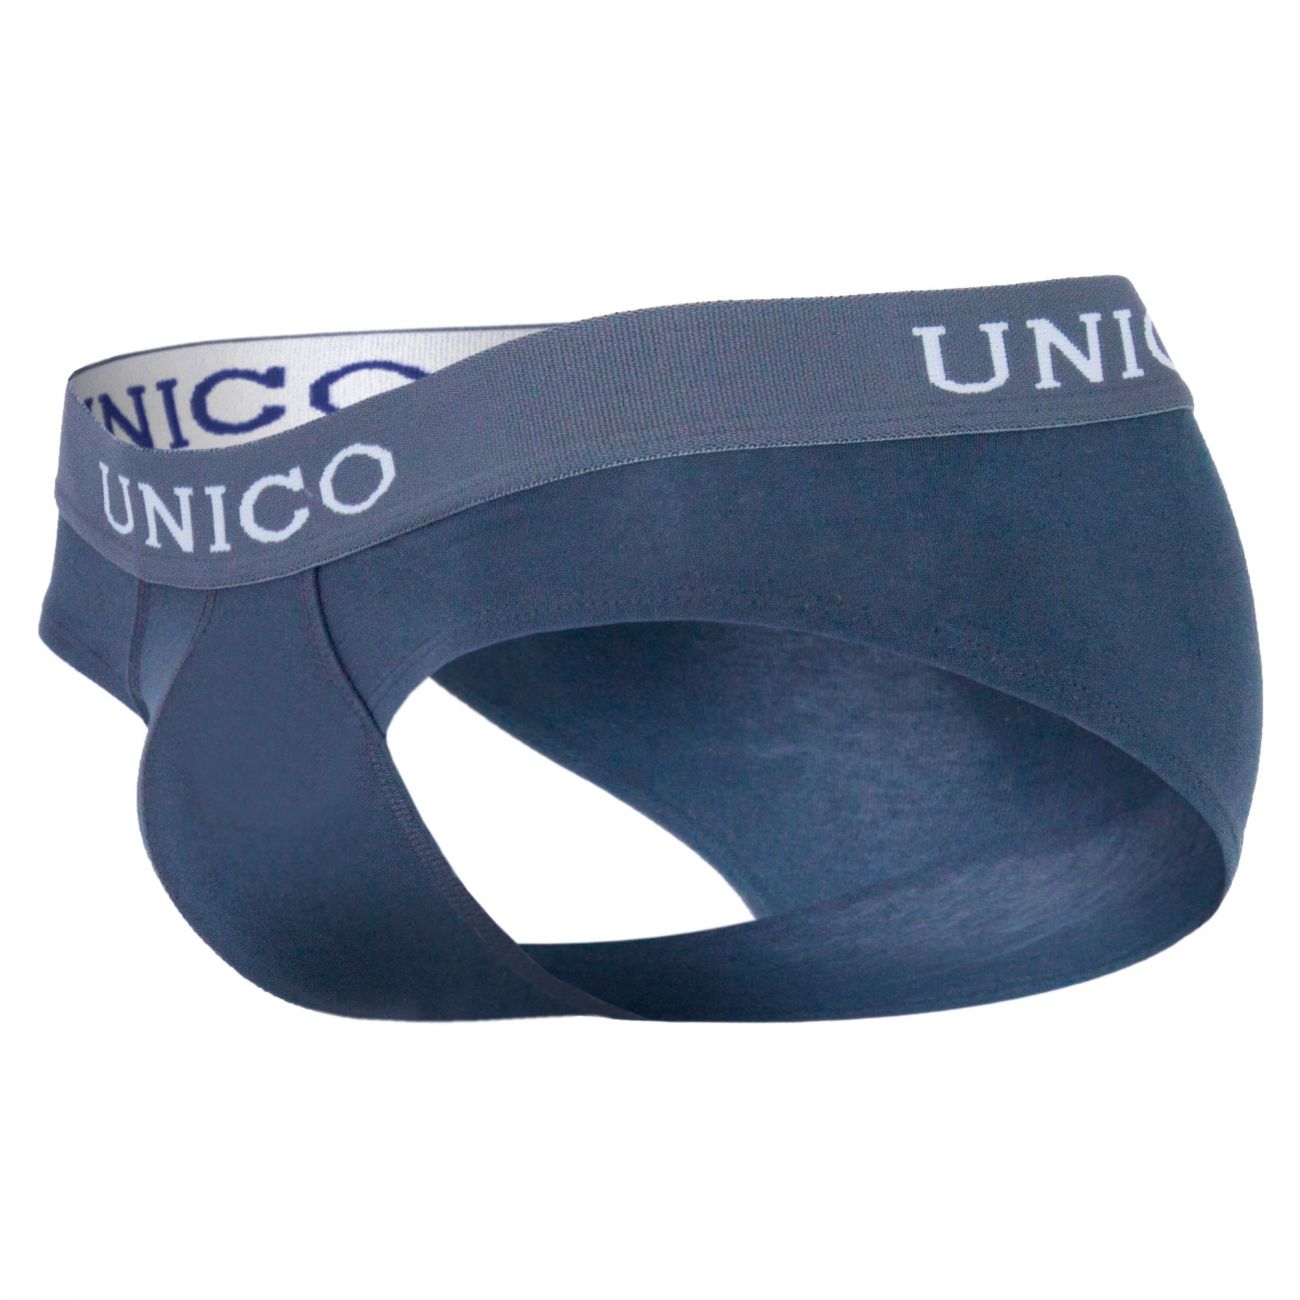 Unico 1200050196 Briefs Asfalto Gray